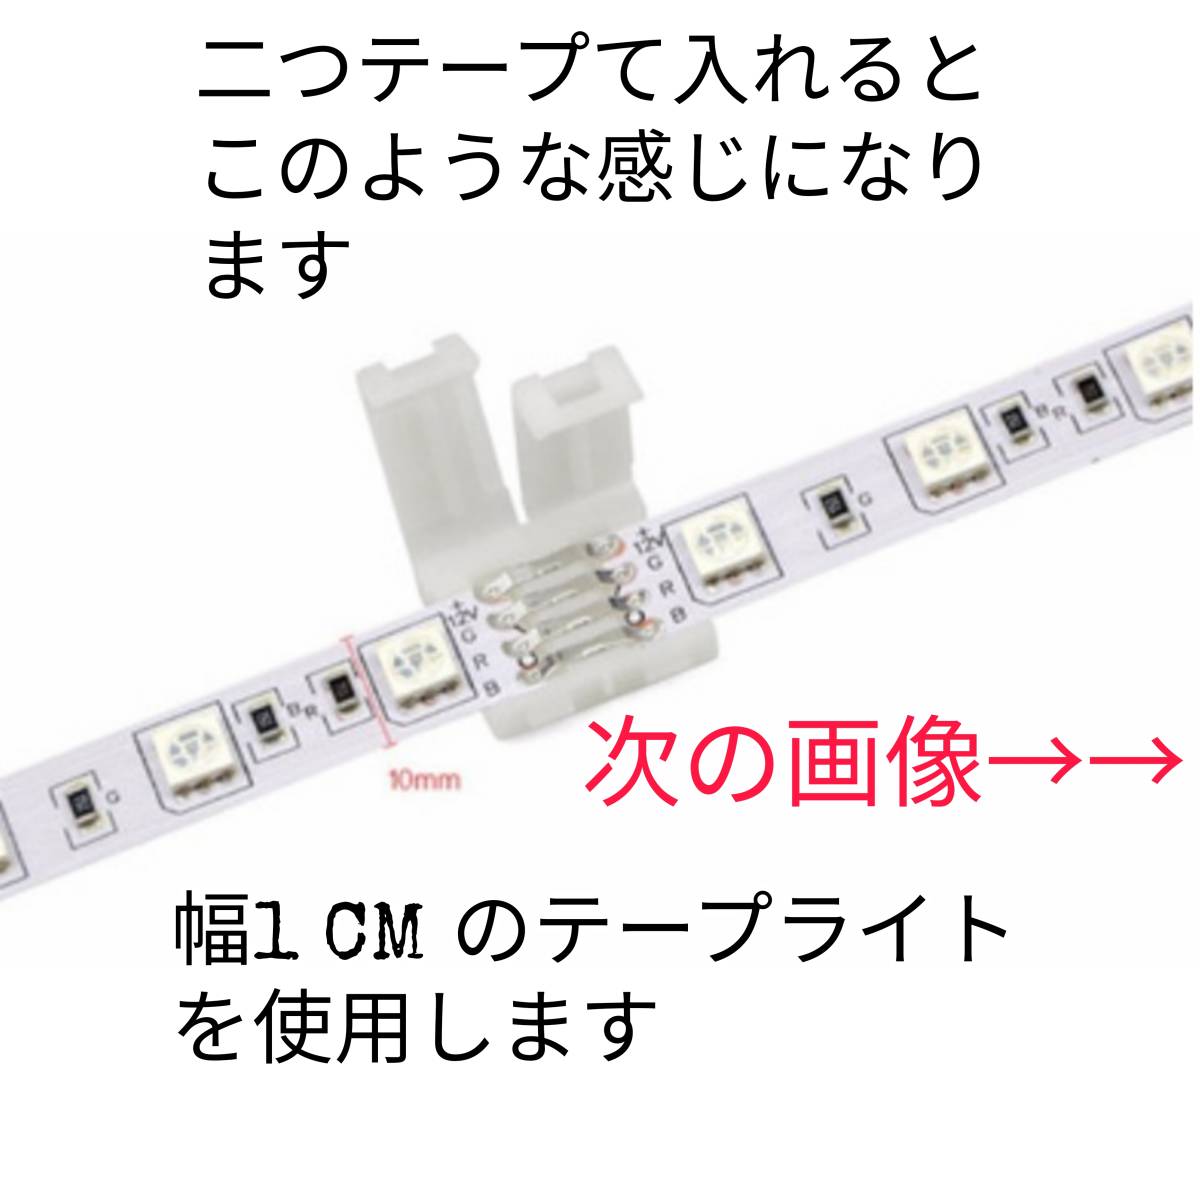  ширина 10mm 4 булавка RGB 5050 лента свет для коннектор половина рисовое поле установка не необходимо 